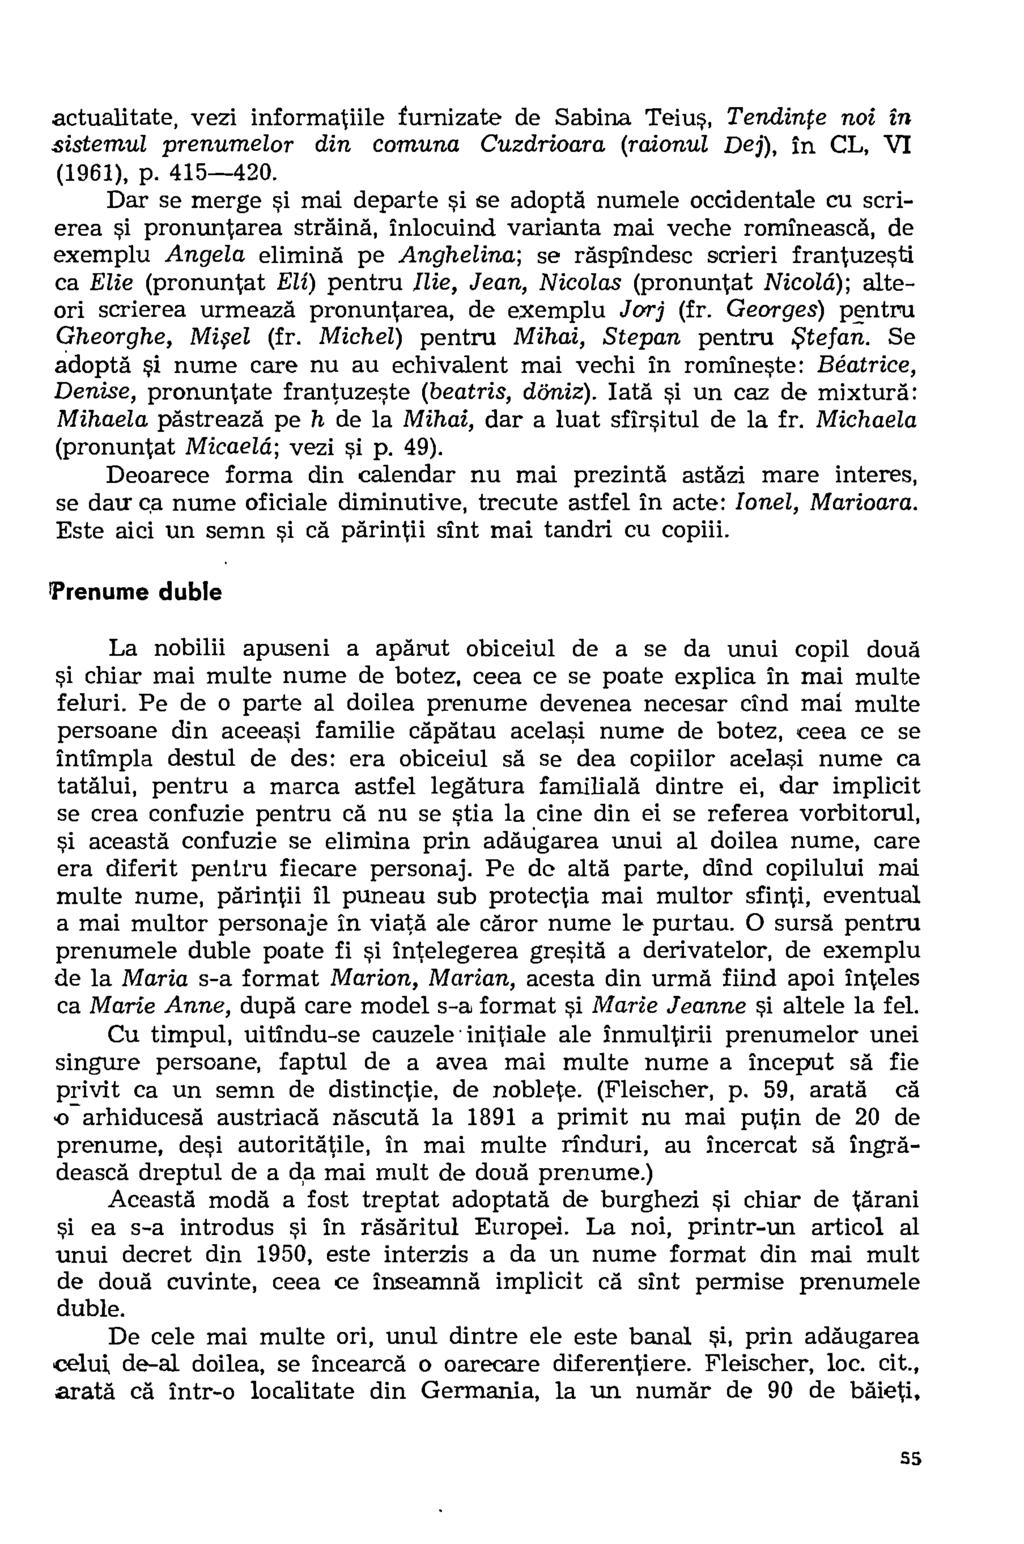 actualitate, vezi informatiile furnizate de Sabina. Teius, Tendinte noi in sistemul prenumelor din comuna Cuzdrioara (raionul Dej), in CL, VI (1961), p. 415-420.